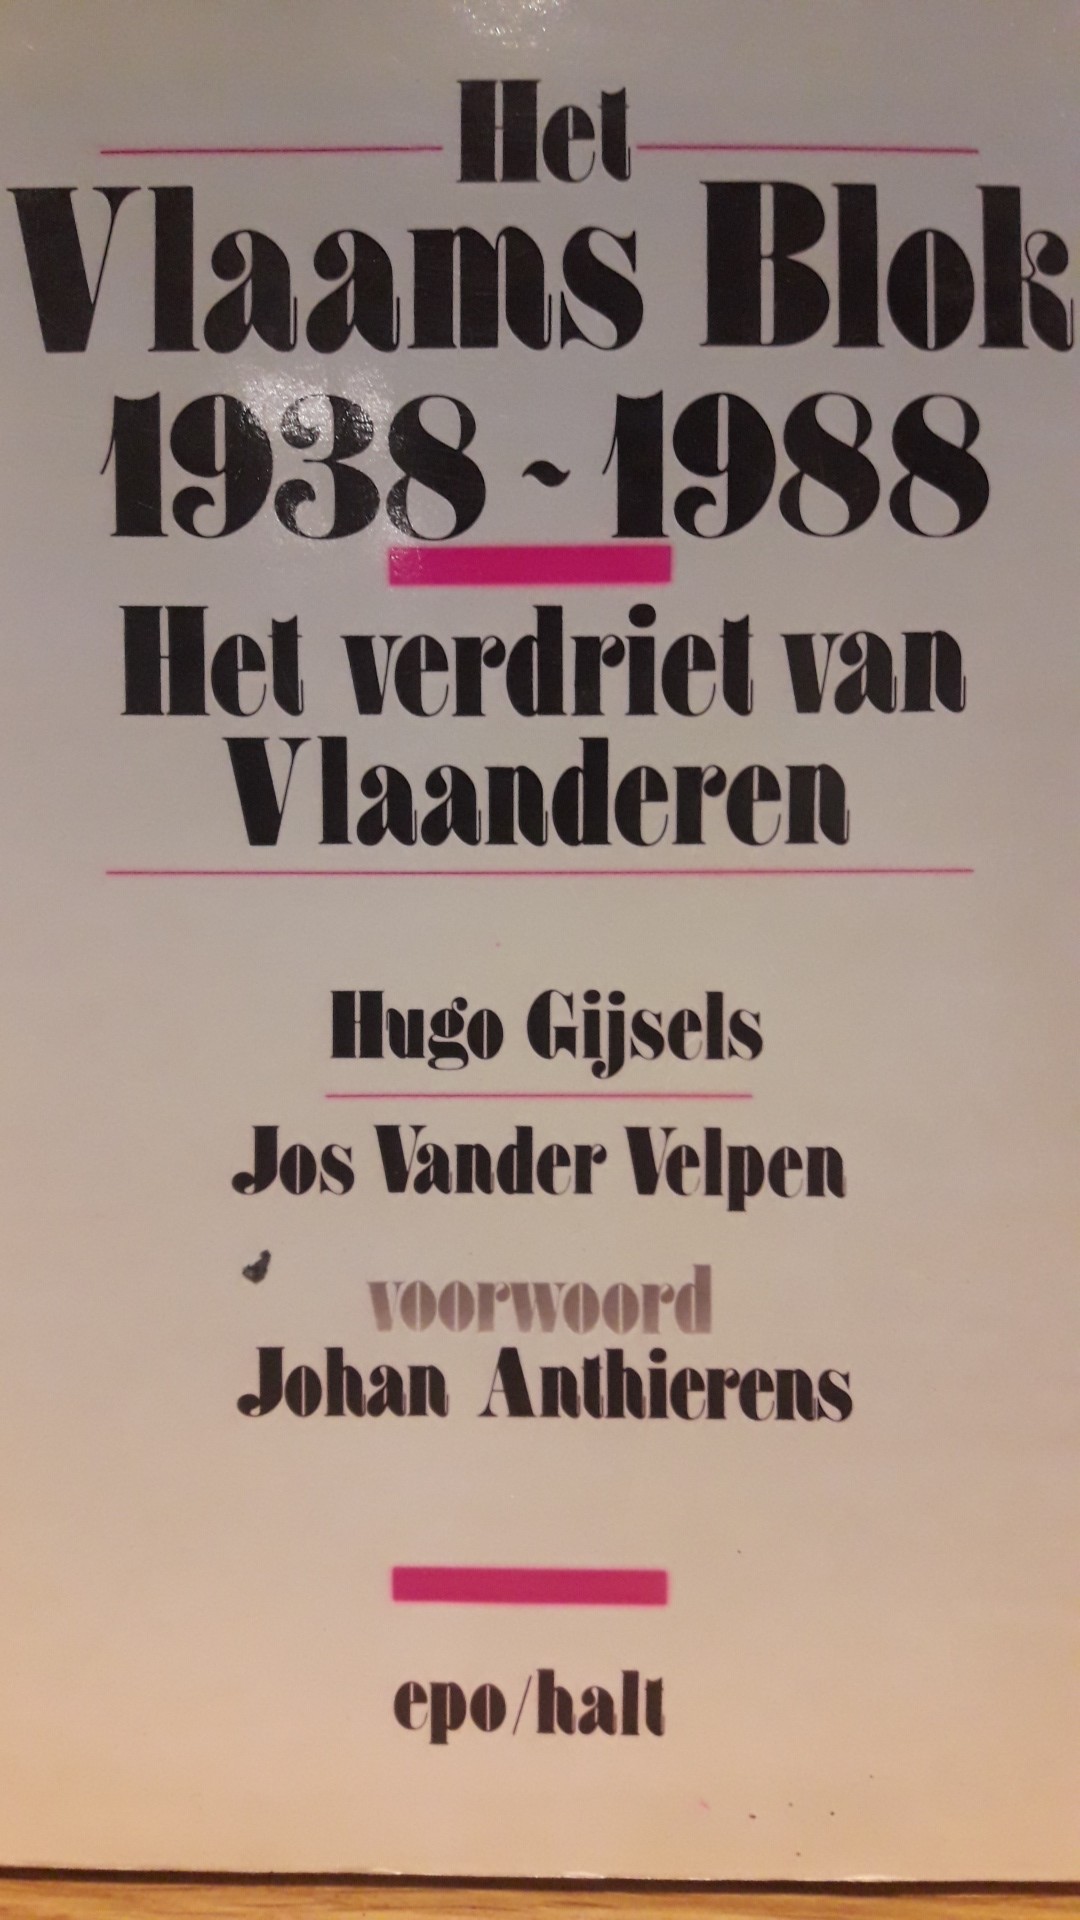 Het Vlaams Blok 1938 - 1988 , Het verdriet van Vlaanderen uitgeverij EPO - 172 blz